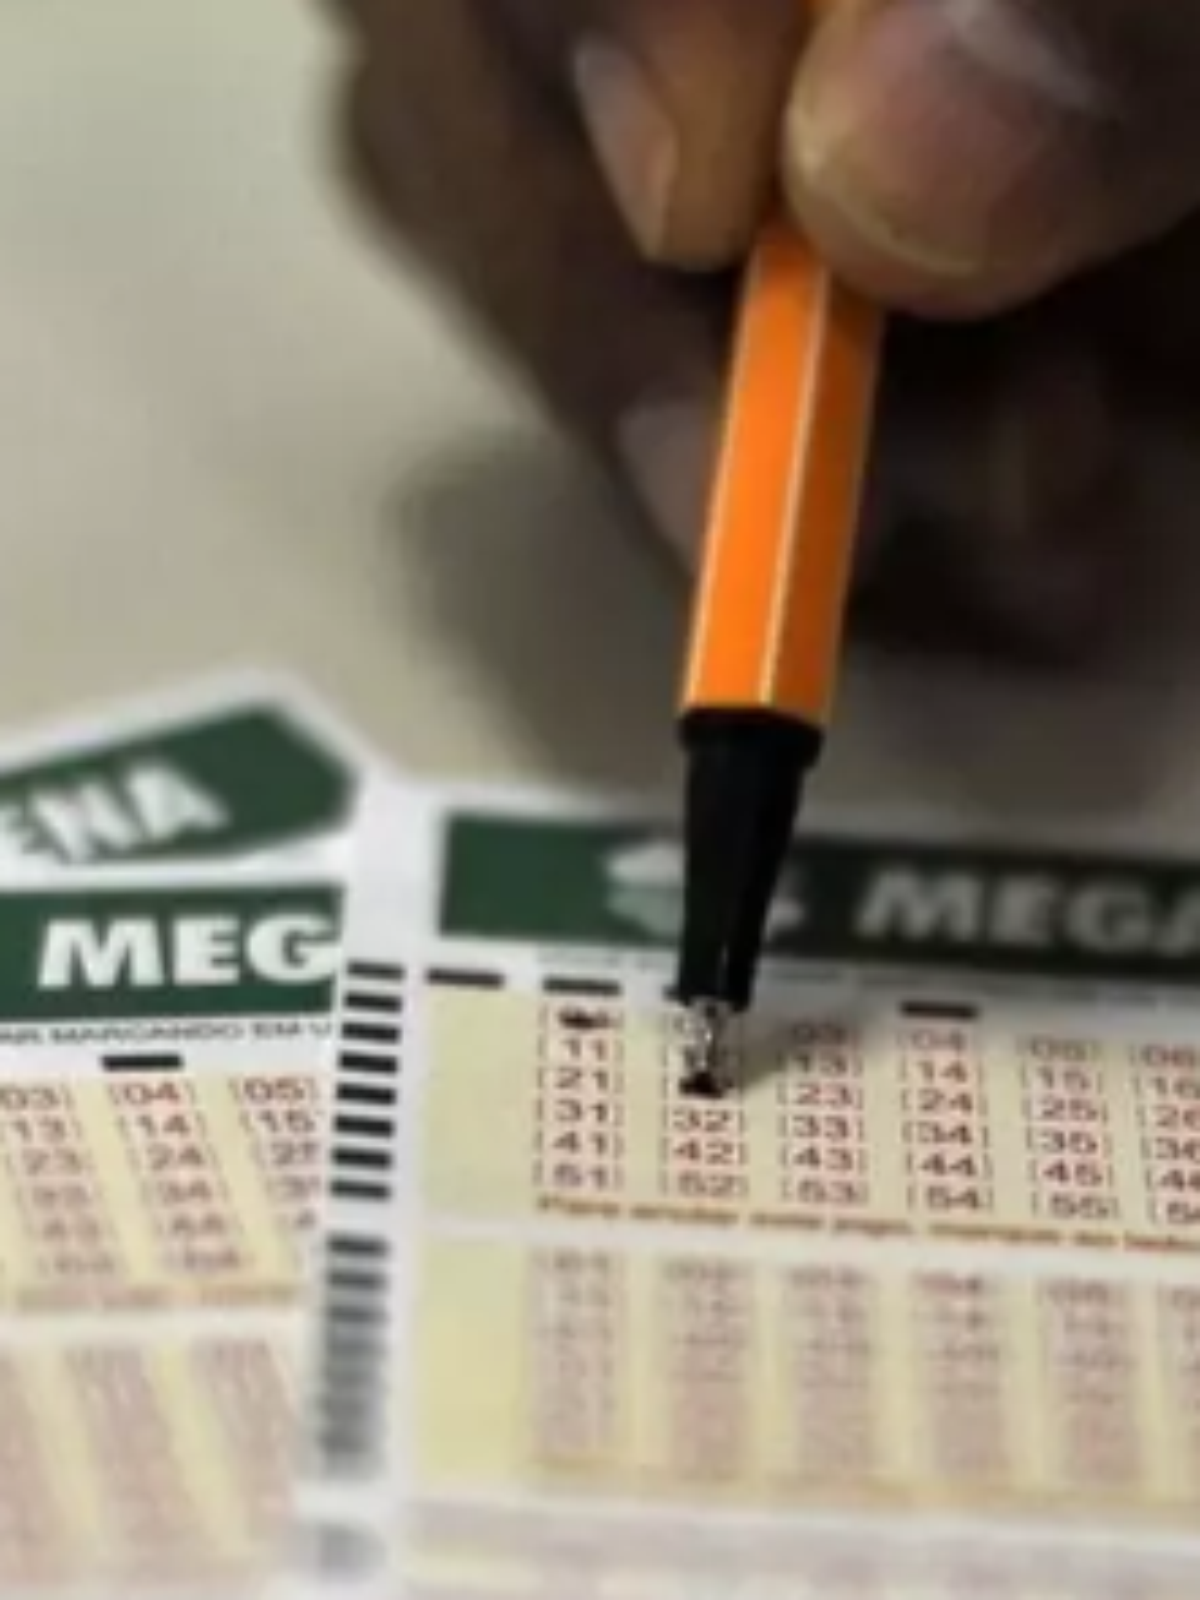 Mega-Sena 2525: aposta simples e bolão dividem R$ 317 milhões